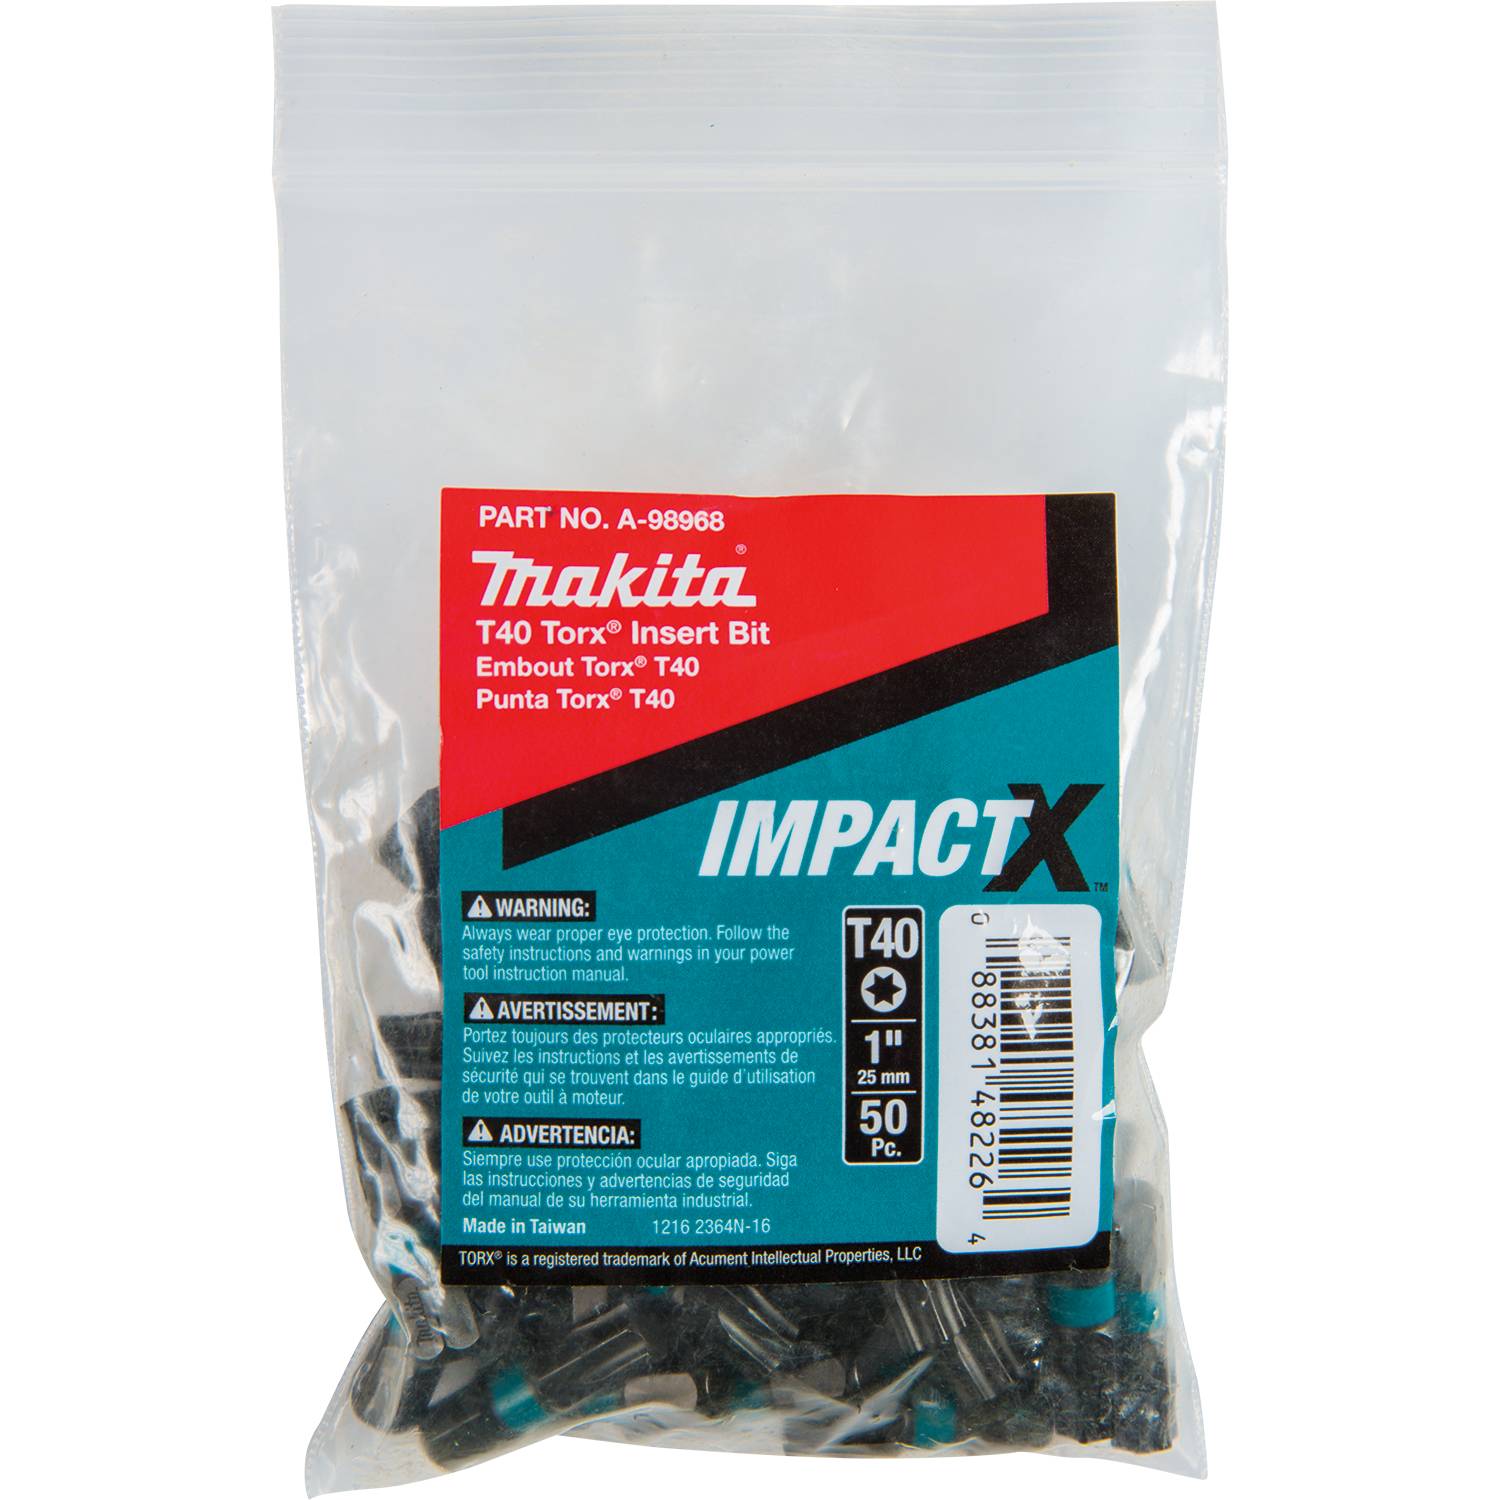 Makita A-98968 ImpactX T40 Torx 1-In Insert Bit, 50-Pack, Bulk